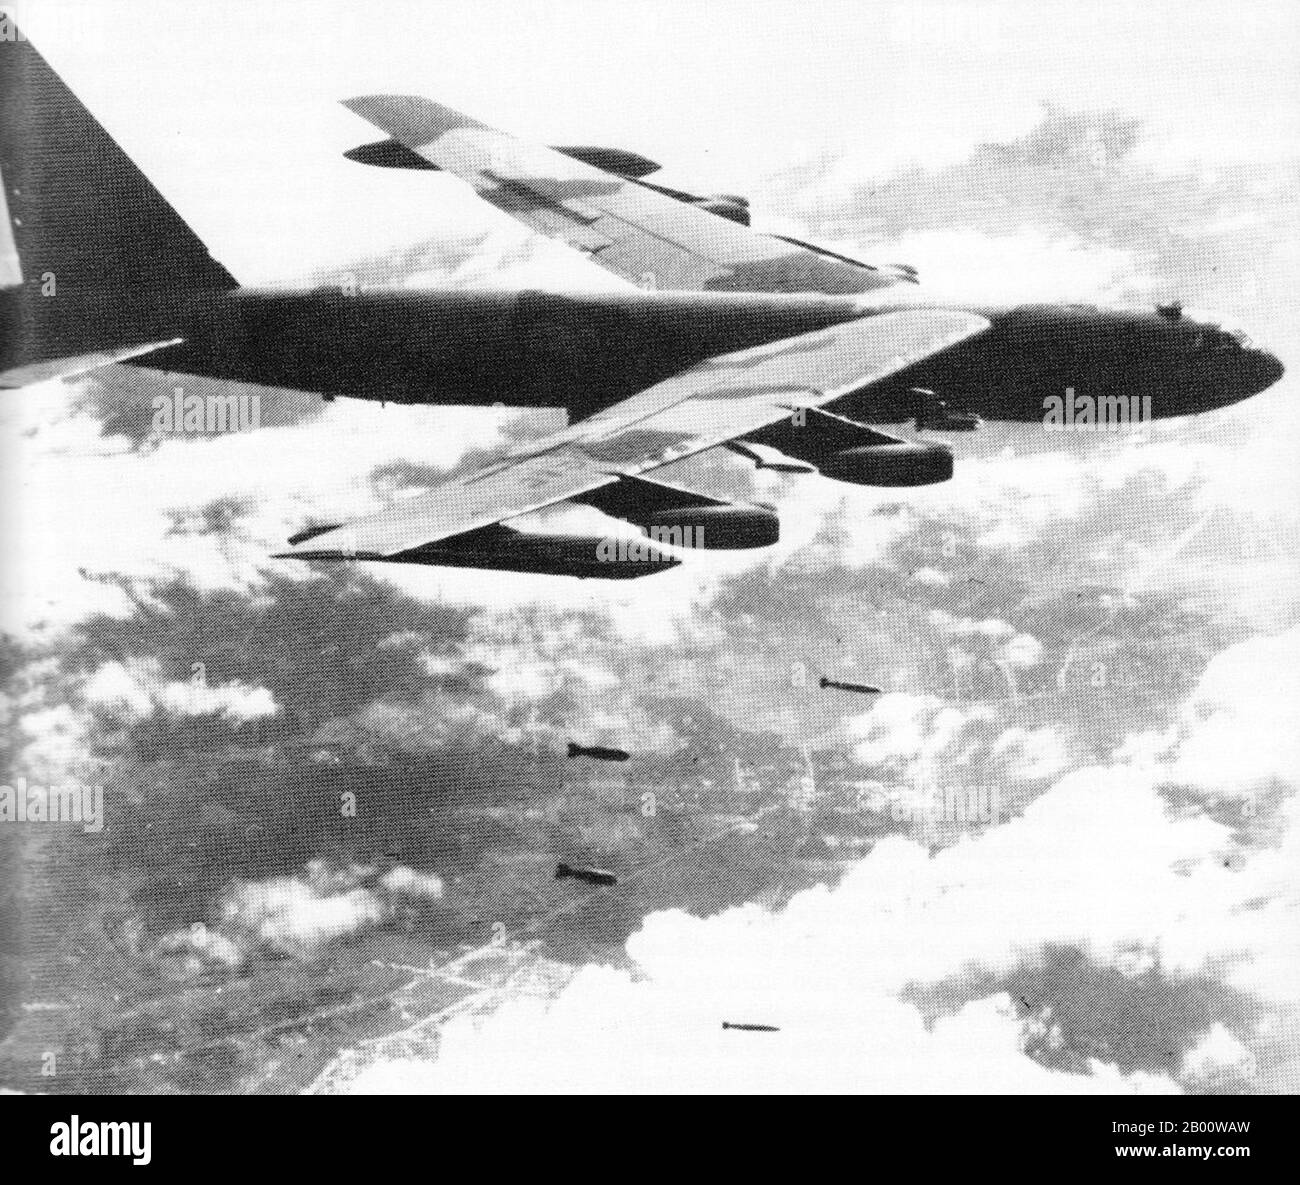 Vietnam: Una USAF B-52 Stratofortress su una bomba corrono sul Vietnam del Nord durante l'operazione Linebacker II, 1972. L'operazione Linebacker II è stata una settima campagna di bombardamenti aerei della US Navy Task Force 77, condotta contro obiettivi nella Repubblica Democratica del Vietnam (Vietnam del Nord) durante il periodo finale del coinvolgimento degli Stati Uniti nella guerra del Vietnam. L'operazione è stata condotta dal 18 al 29 dicembre 1972, portando a diversi nomi informali come 'le Rausili di dicembre' e 'i bombardamenti di Natale'. Ha visto i più grandi attacchi di bombardieri pesanti lanciati dall'aeronautica americana dalla fine della seconda guerra mondiale Foto Stock